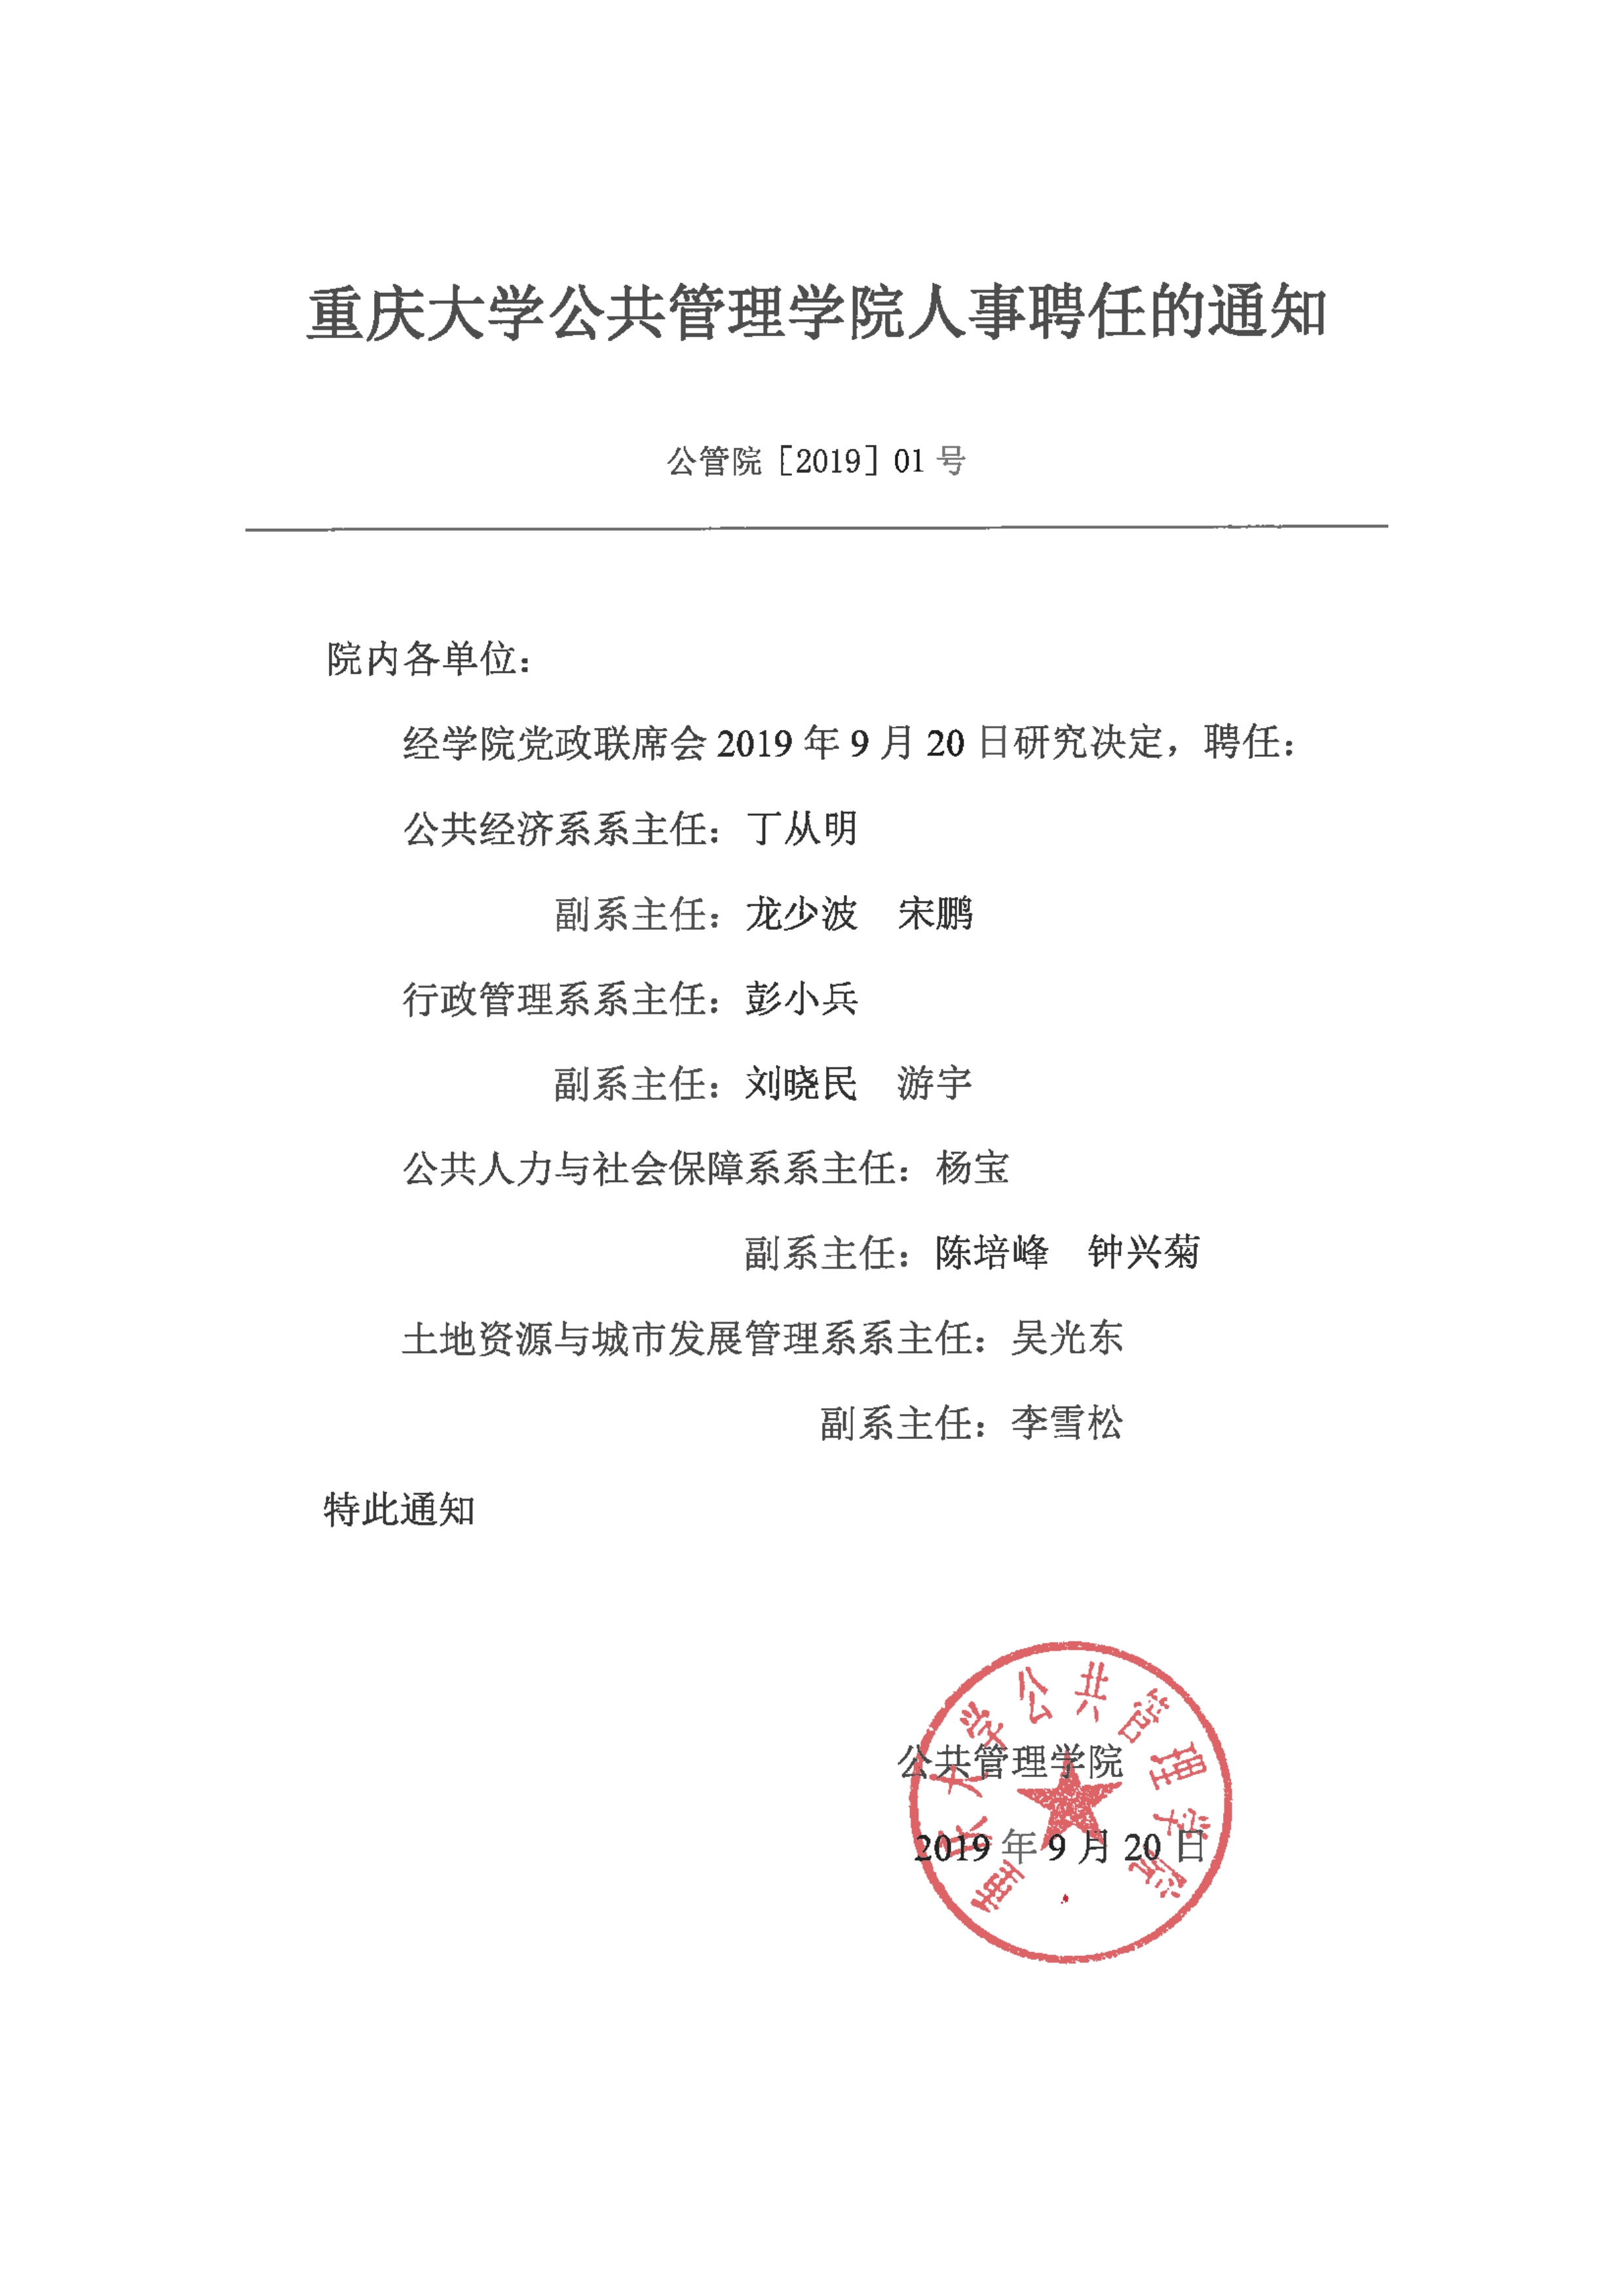 重庆大学公共管理学院人事聘任的通知